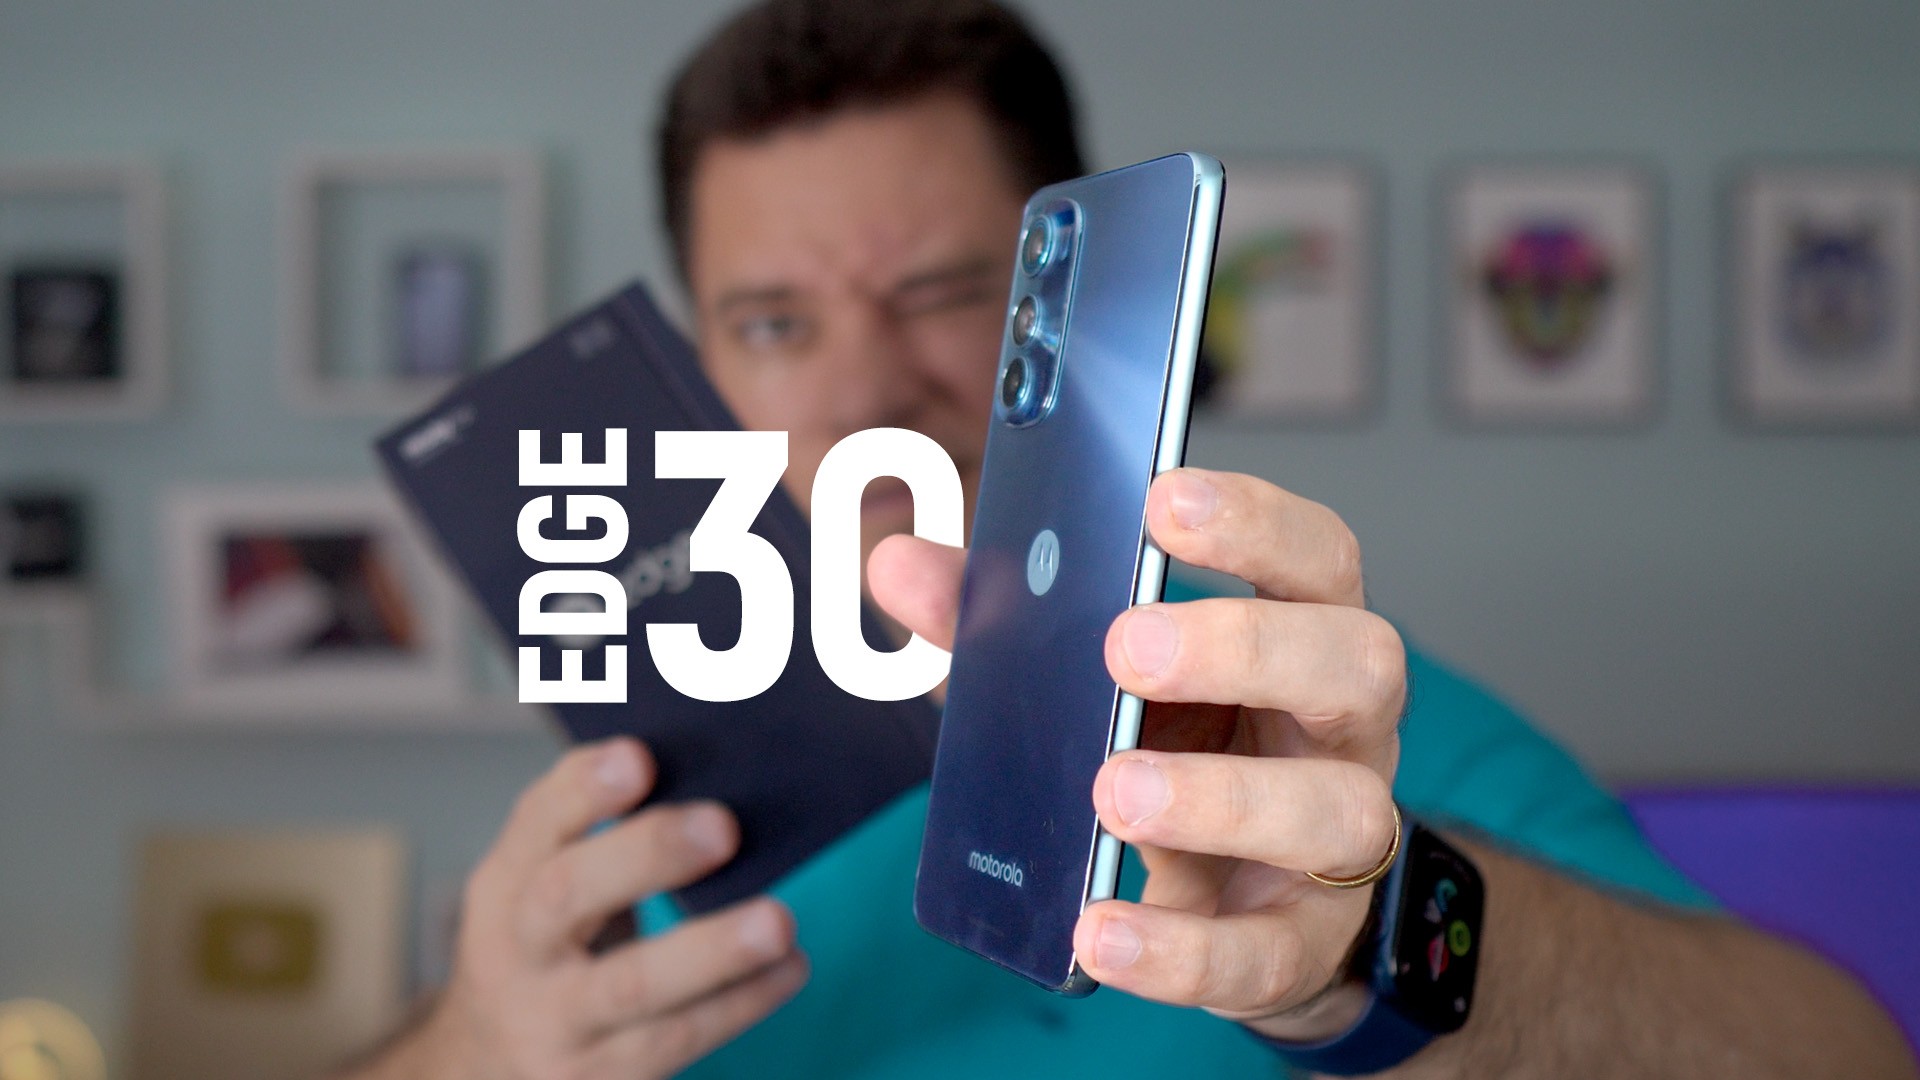 Edge 30 : Le téléphone 5G le plus fin du monde progresse bien dans une évolution discrète |  Analyse / Bilan